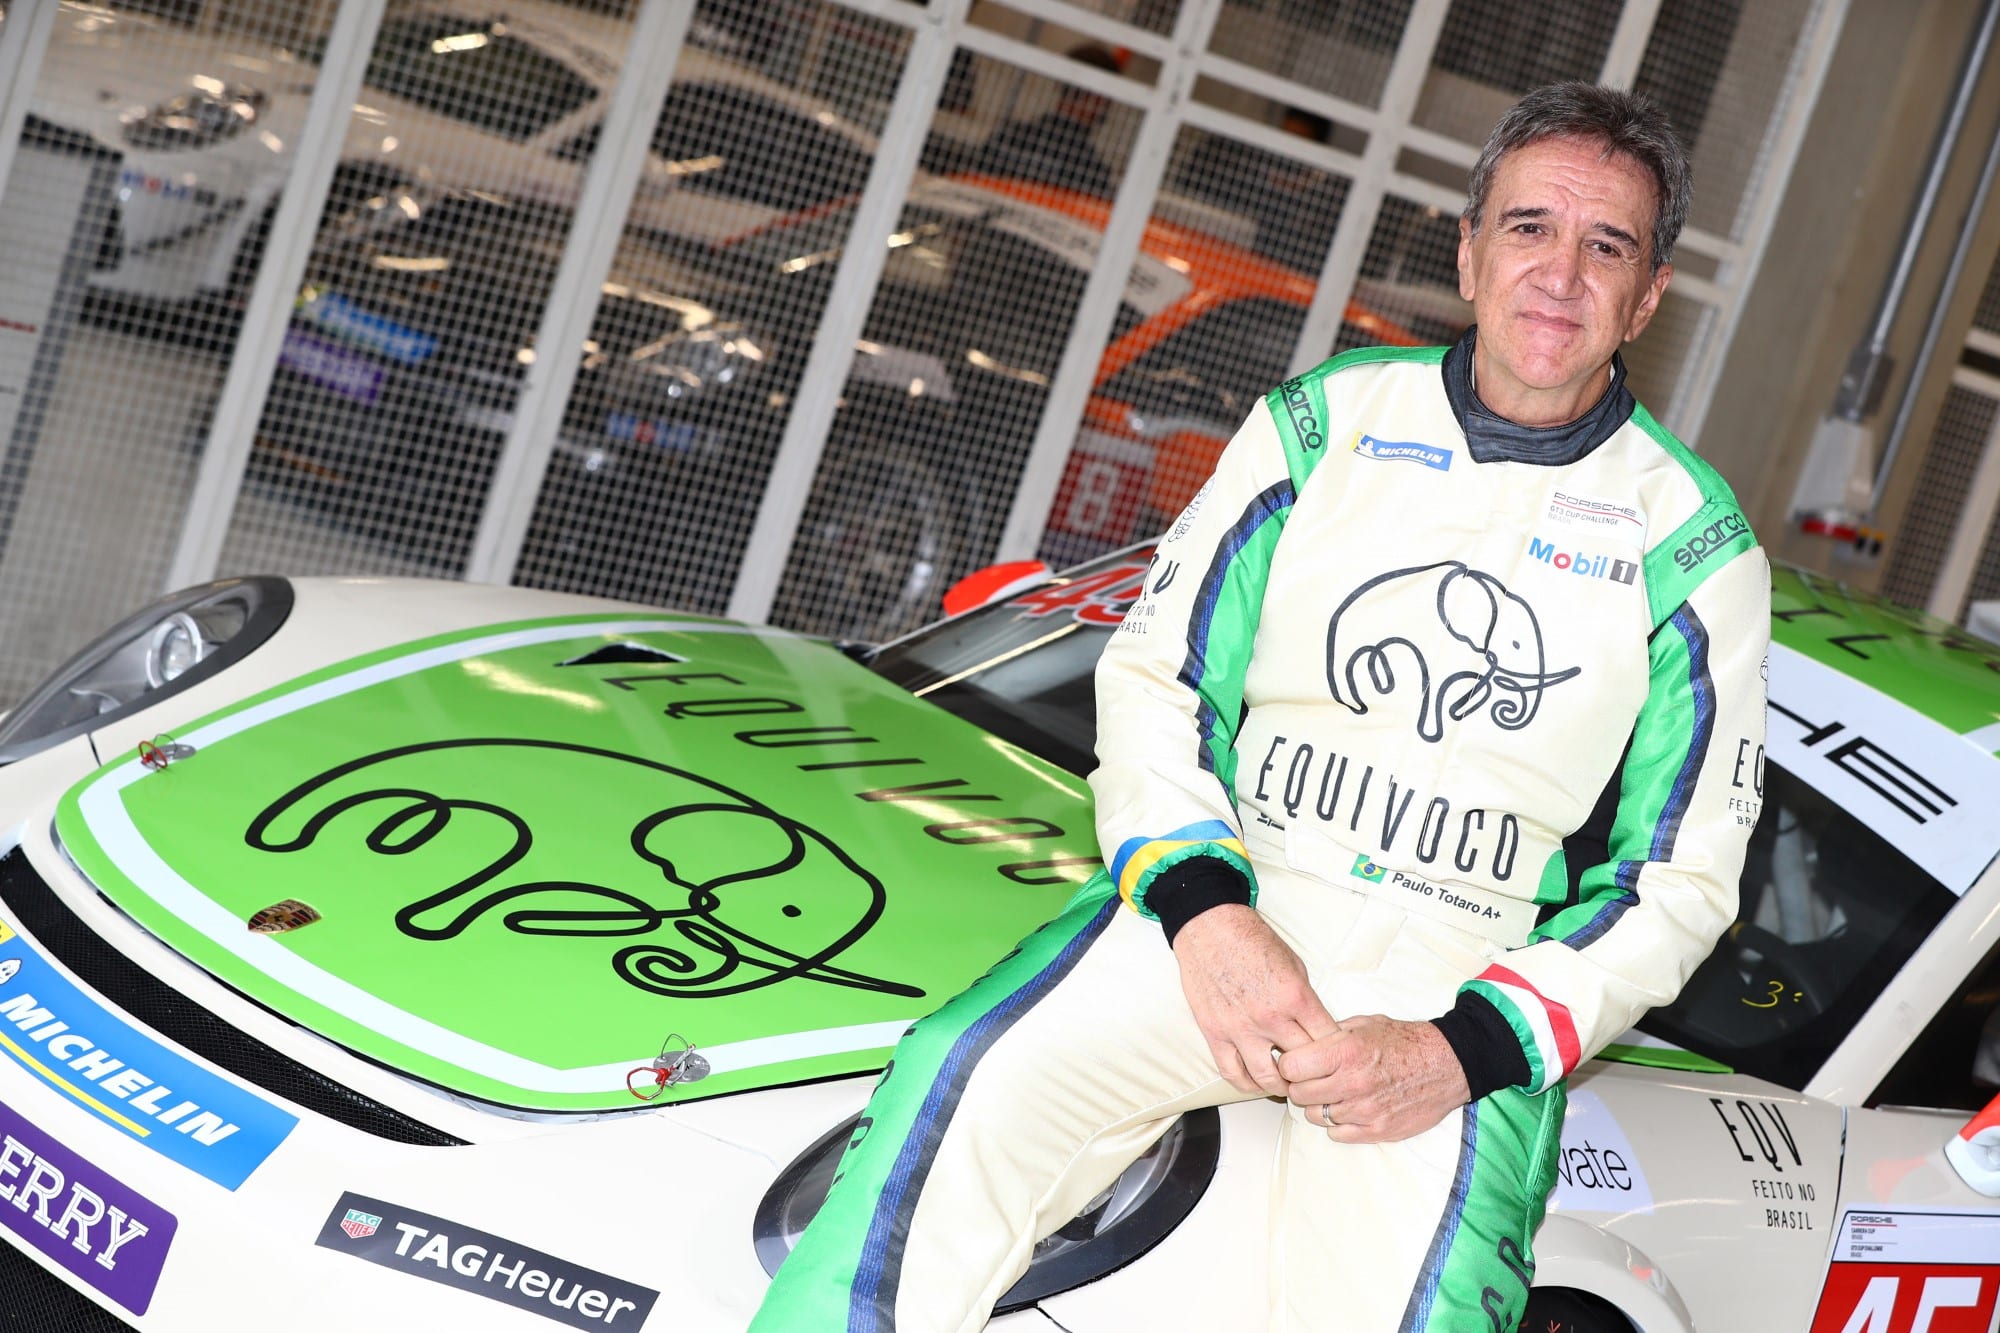 Paulo Totaro (Equivoco Racing)